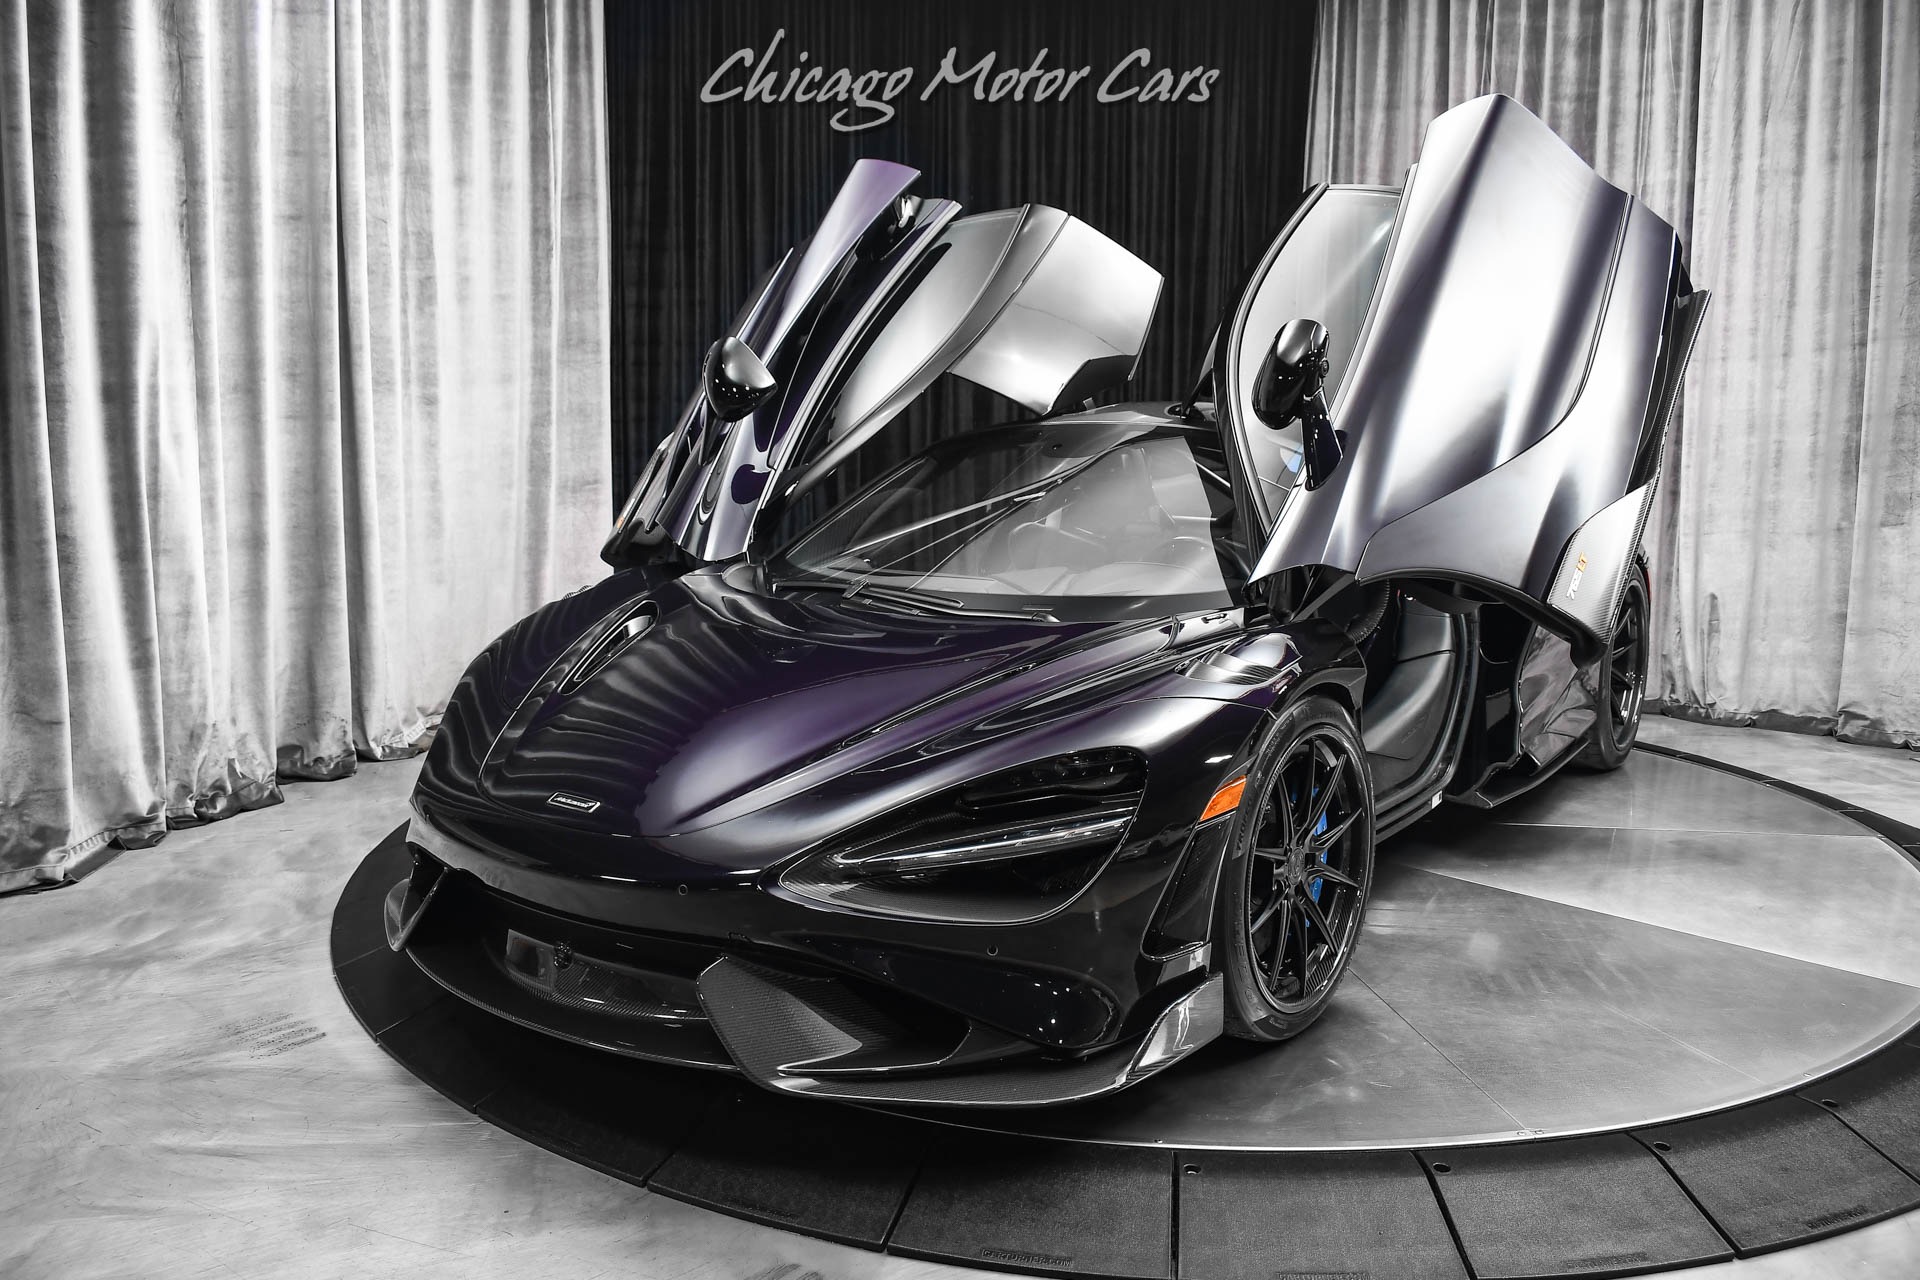 Used-2021-McLaren-765LT-Coupe-Original-MSRP-531419-50k-in-Upgrades-HARD-LOADED-Carbon-Fiber